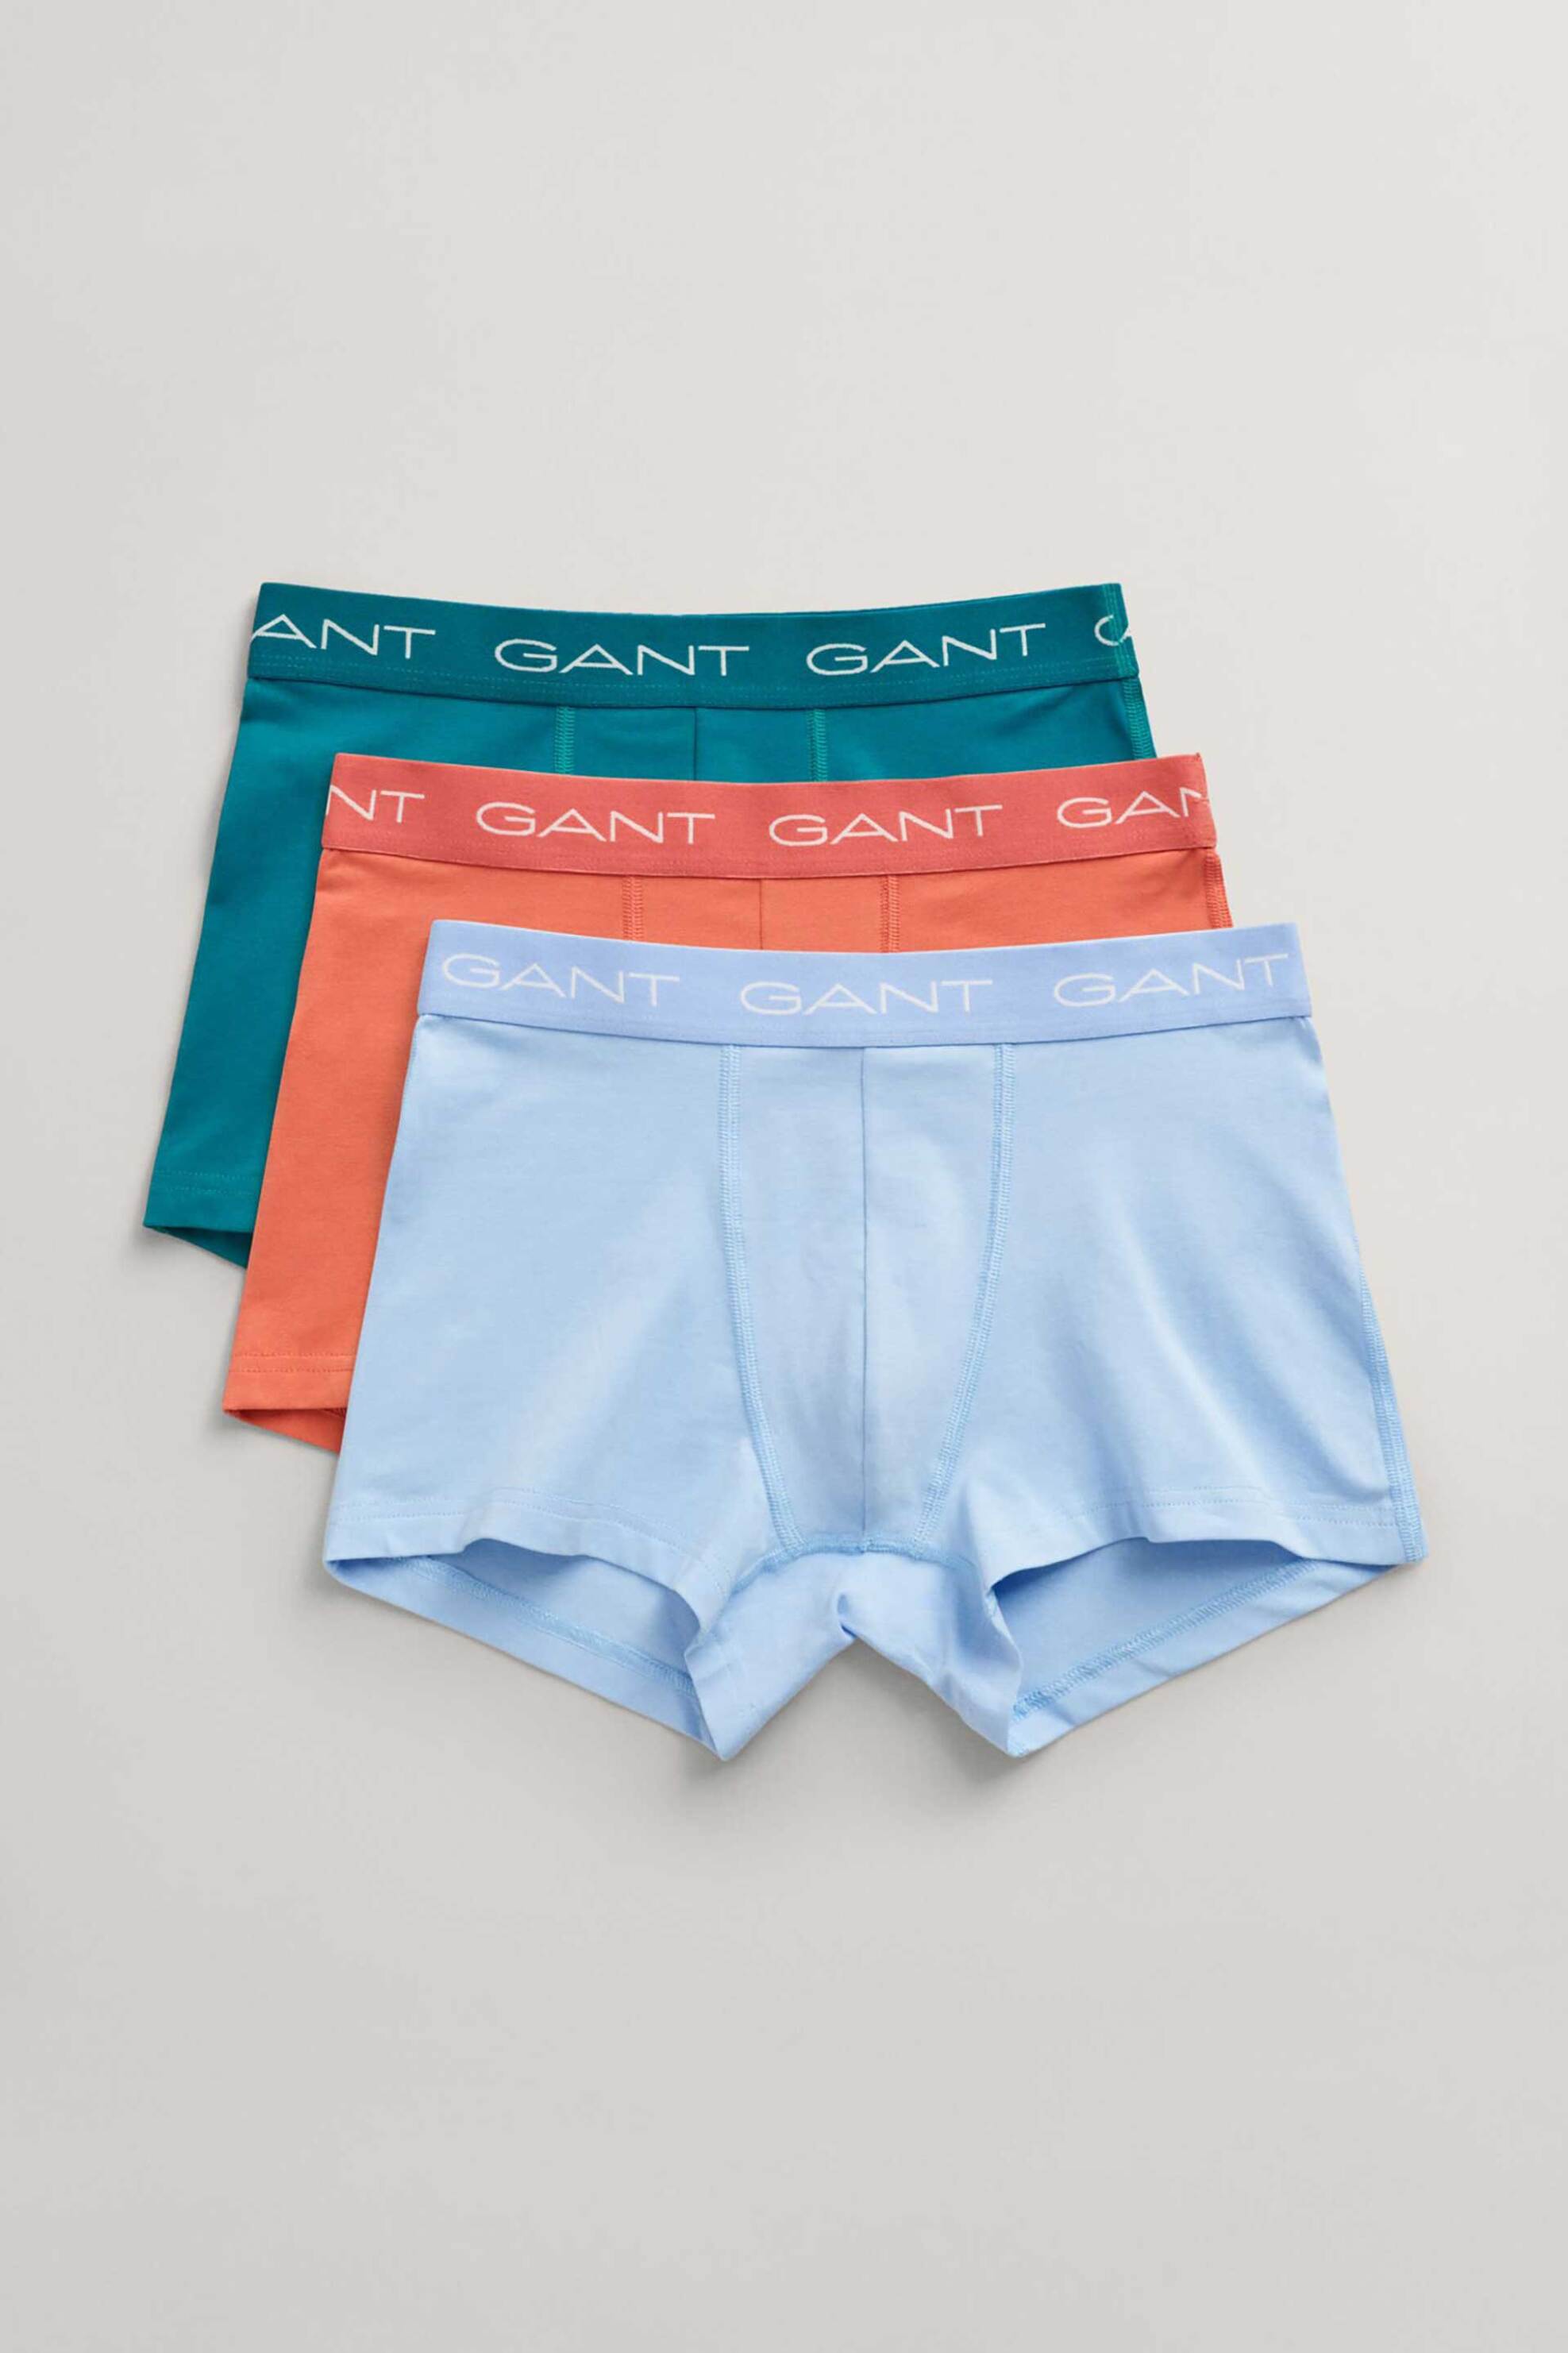 Ανδρική Μόδα > Ανδρικά Ρούχα > Ανδρικά Εσώρουχα > Ανδρικά Εσώρουχα Σετ Gant σετ ανδρικά εσώρουχα trunk με λογότυπο Slim Fit (3 τεμάχια) - 902413003 Μπλε Ανοιχτό